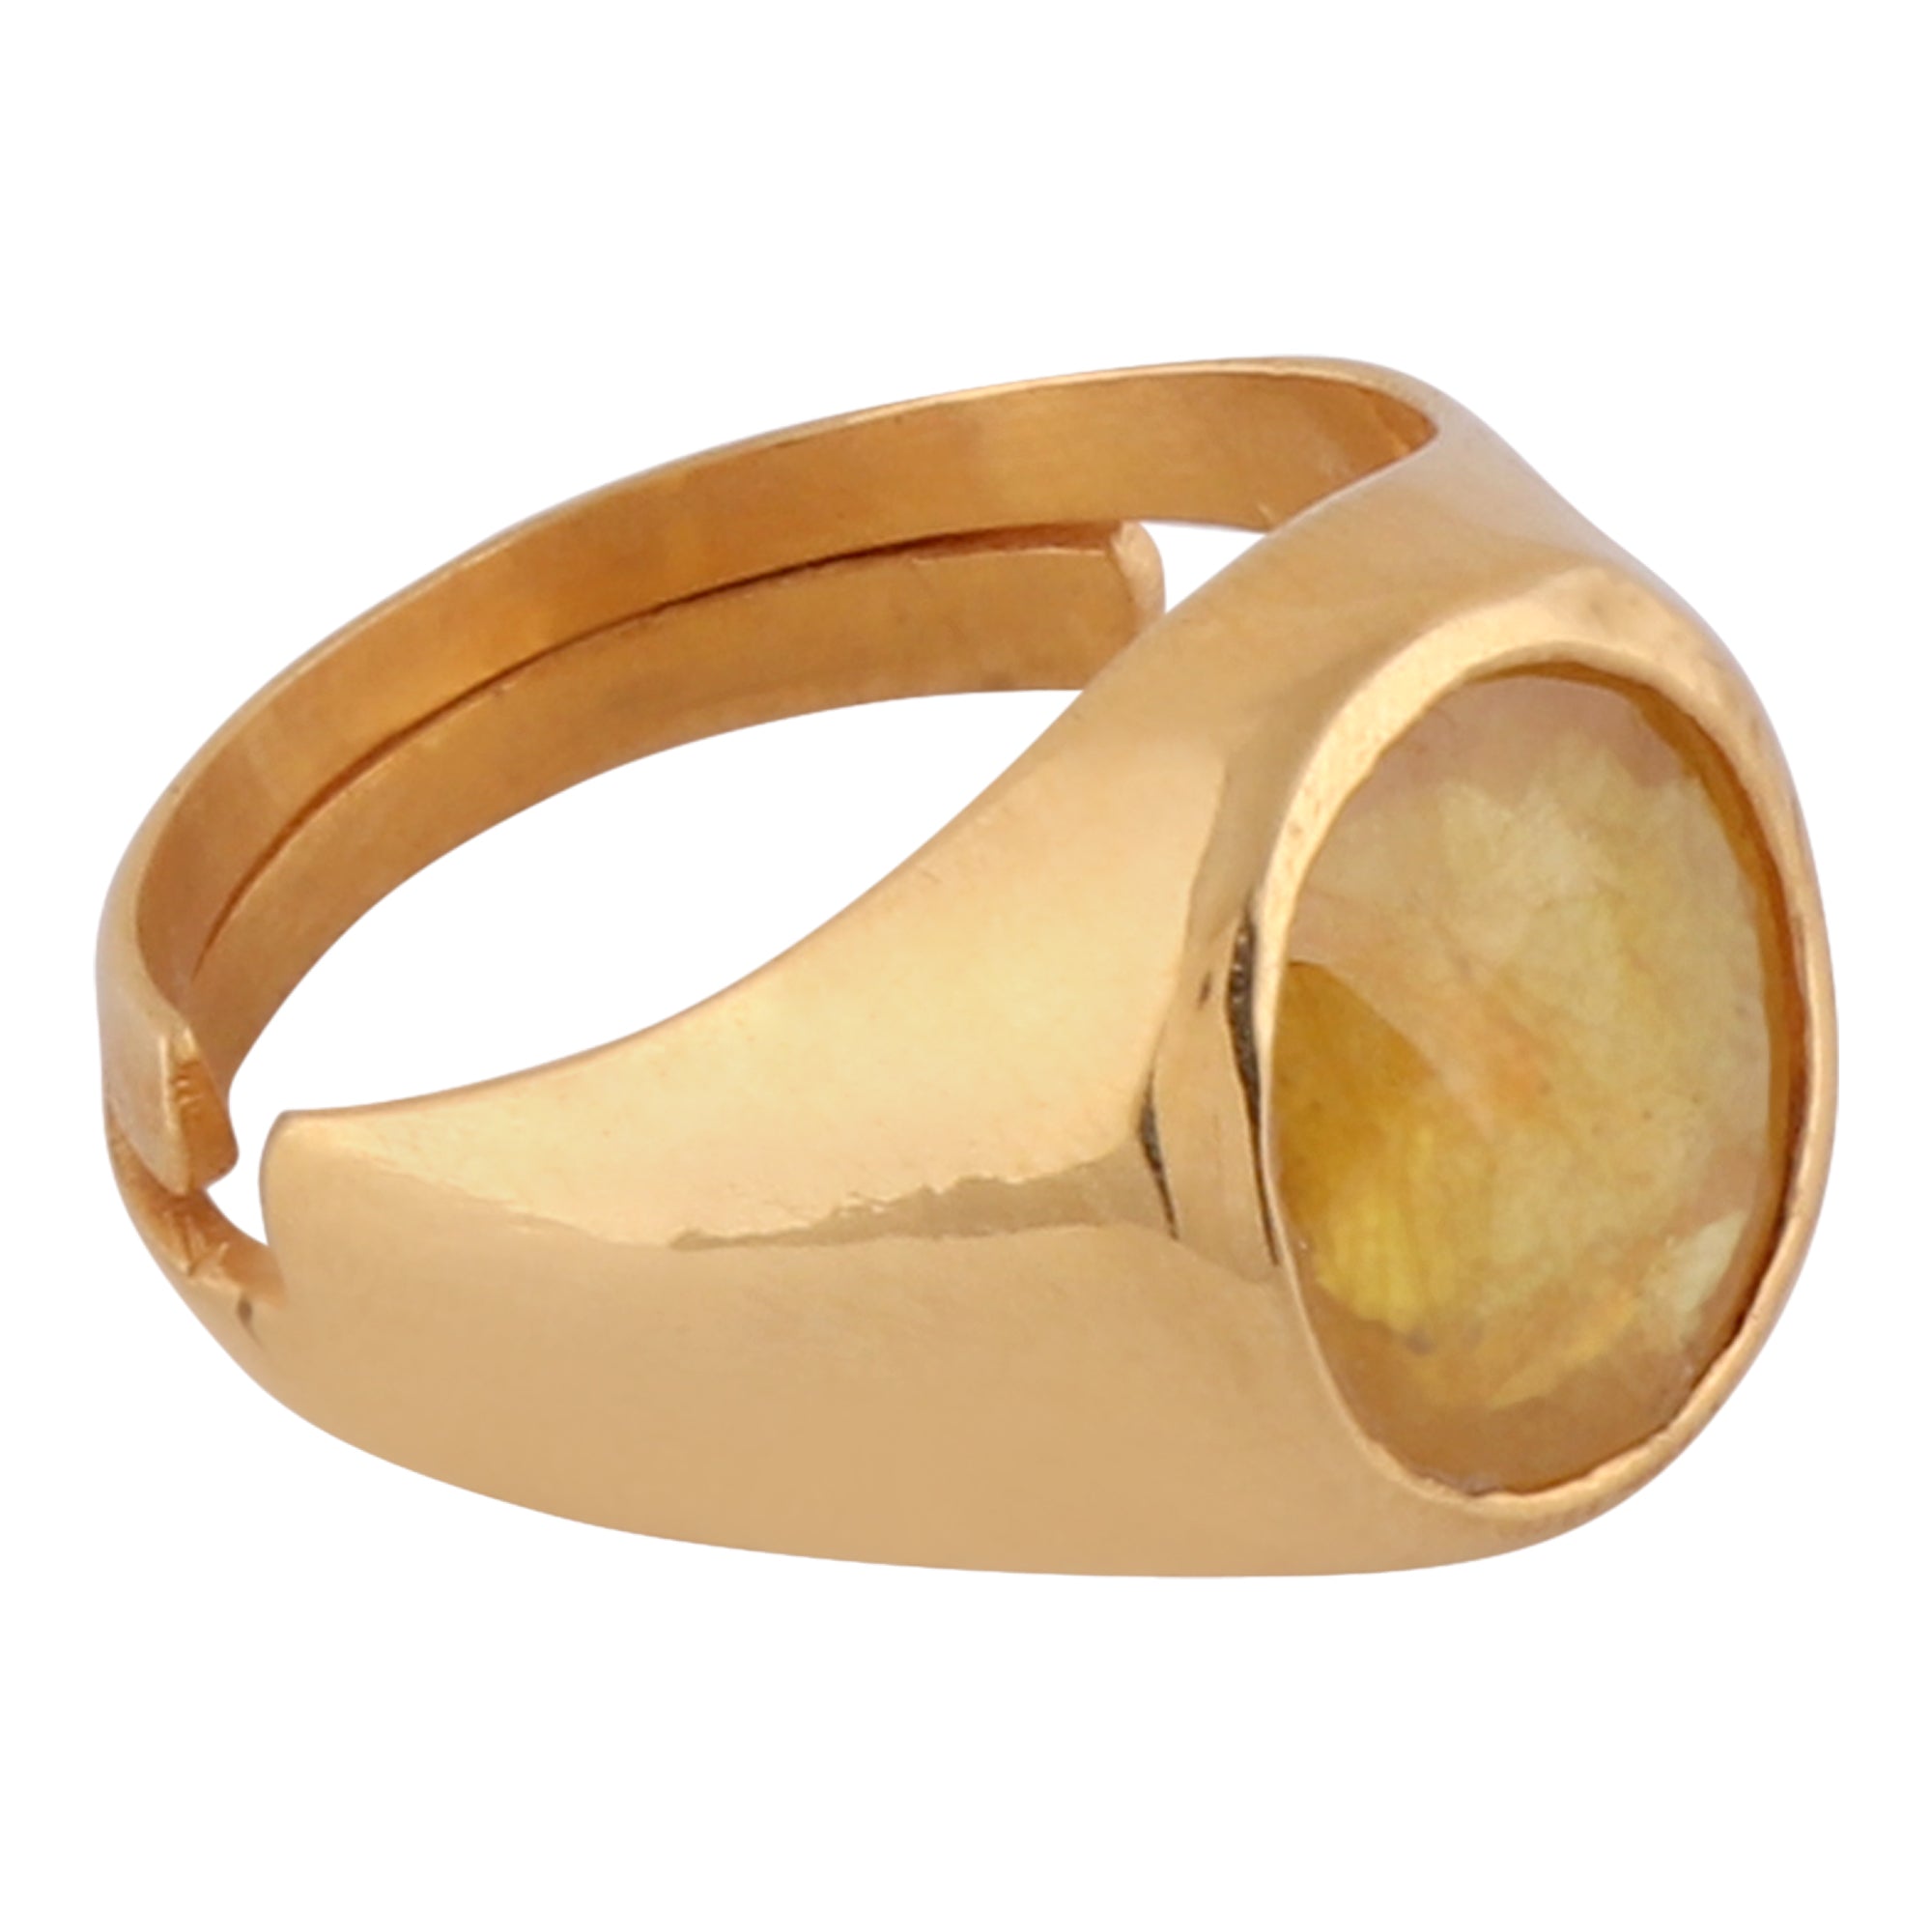 Yellow Sapphire Panchdhatu Ring Lab certified ADJUSTABLE RING